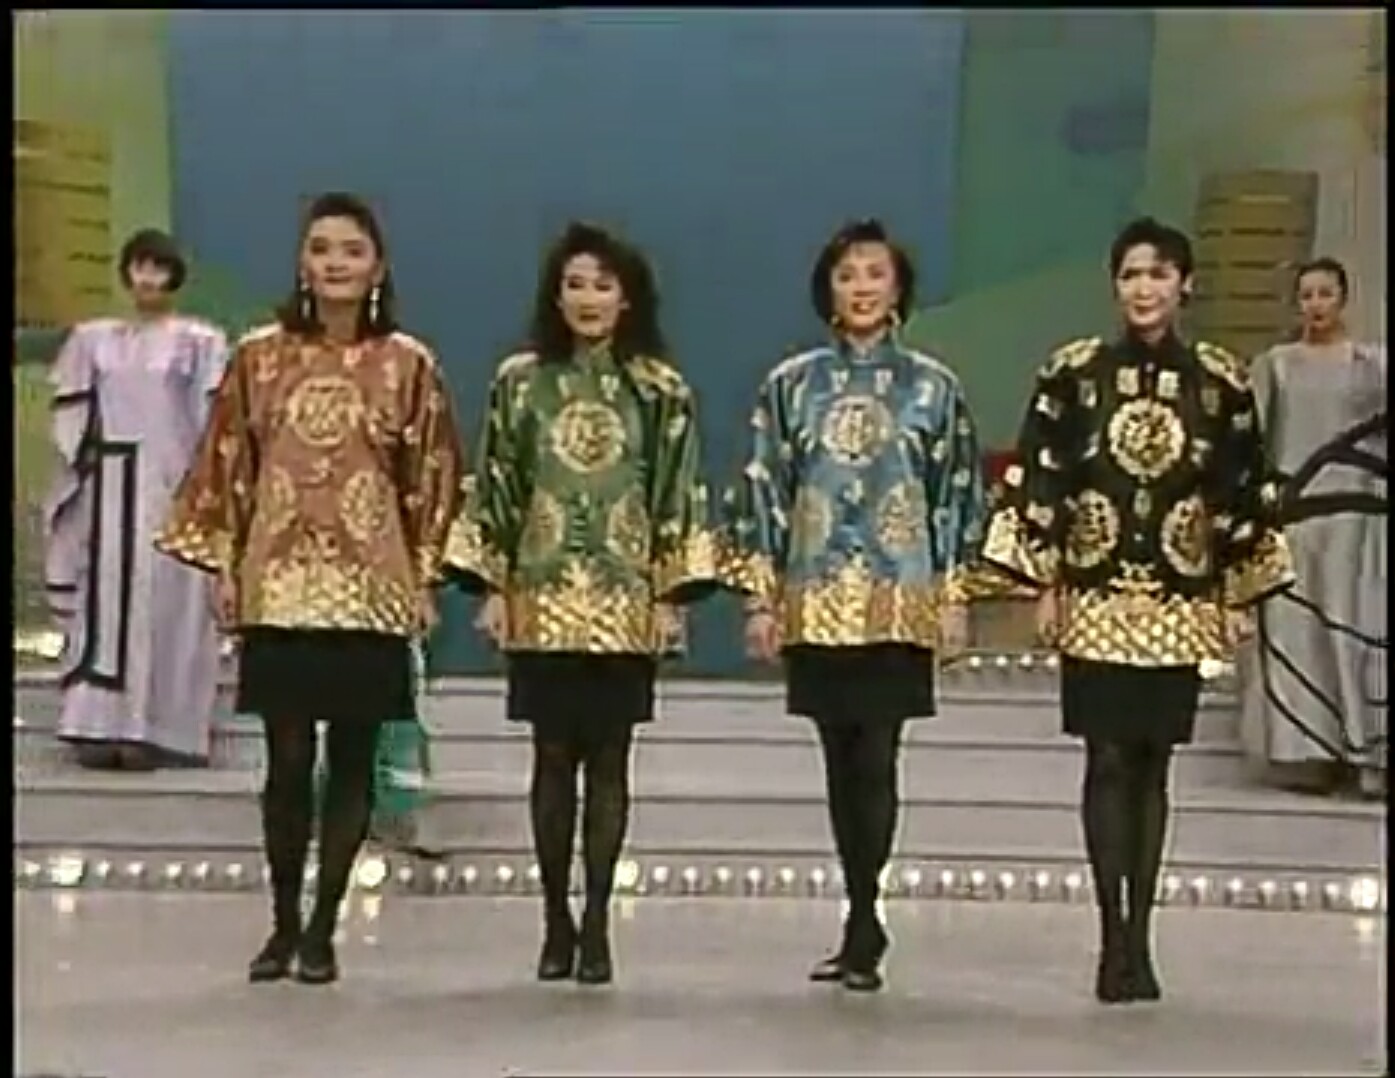 從左到右依次為：張強、劉小娜、陳蕾、張咪